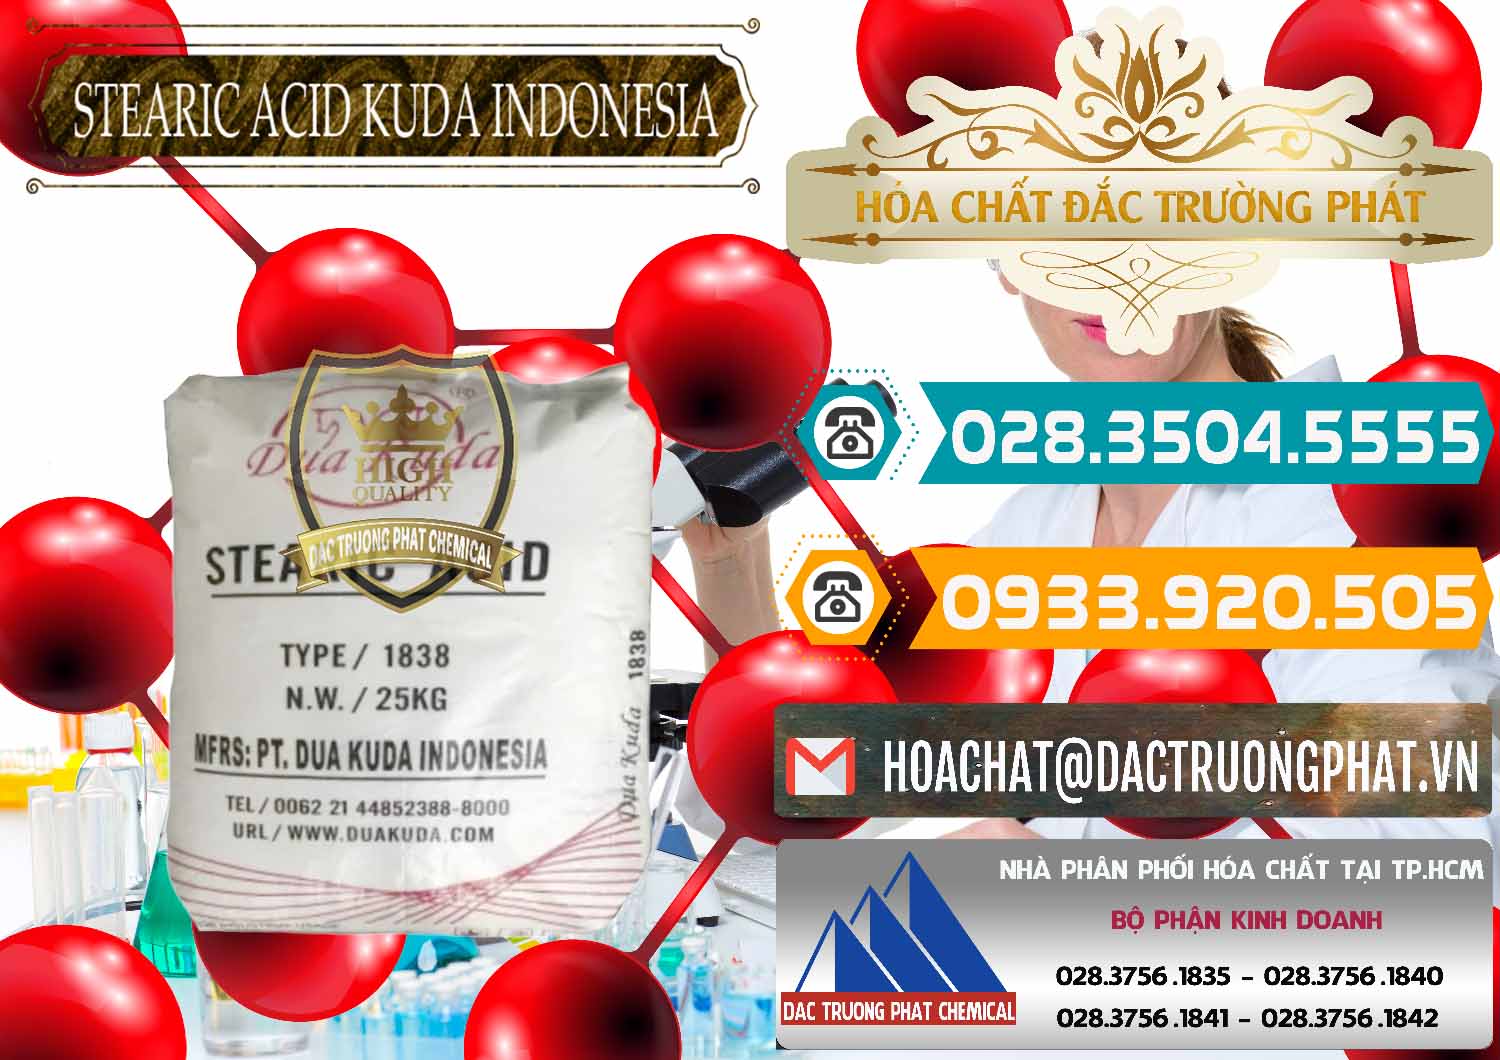 Cty chuyên kinh doanh & bán Axit Stearic - Stearic Acid Dua Kuda Indonesia - 0388 - Chuyên cung ứng và phân phối hóa chất tại TP.HCM - congtyhoachat.vn